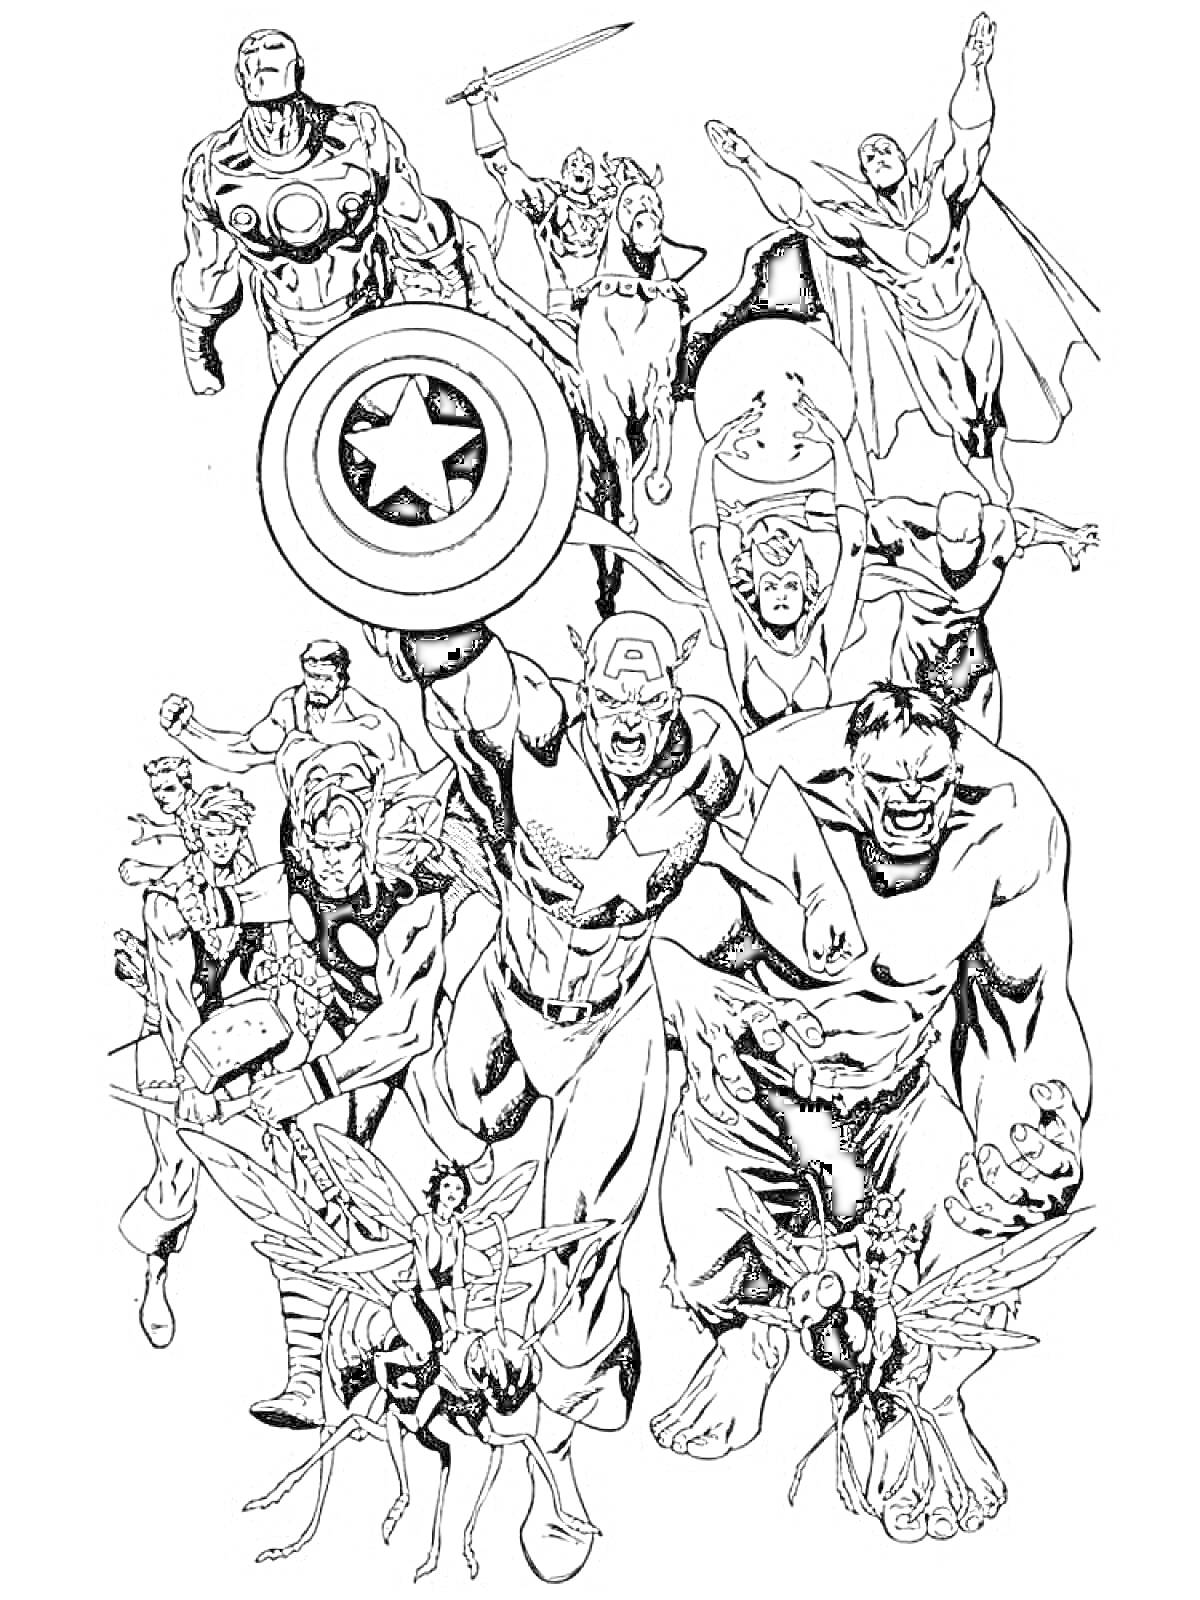 Герои Марвел с Капитаном Америкой, Железным Человеком, Тором, Халком, Человеком-Муравьем, Осы, Соколом и другими героями